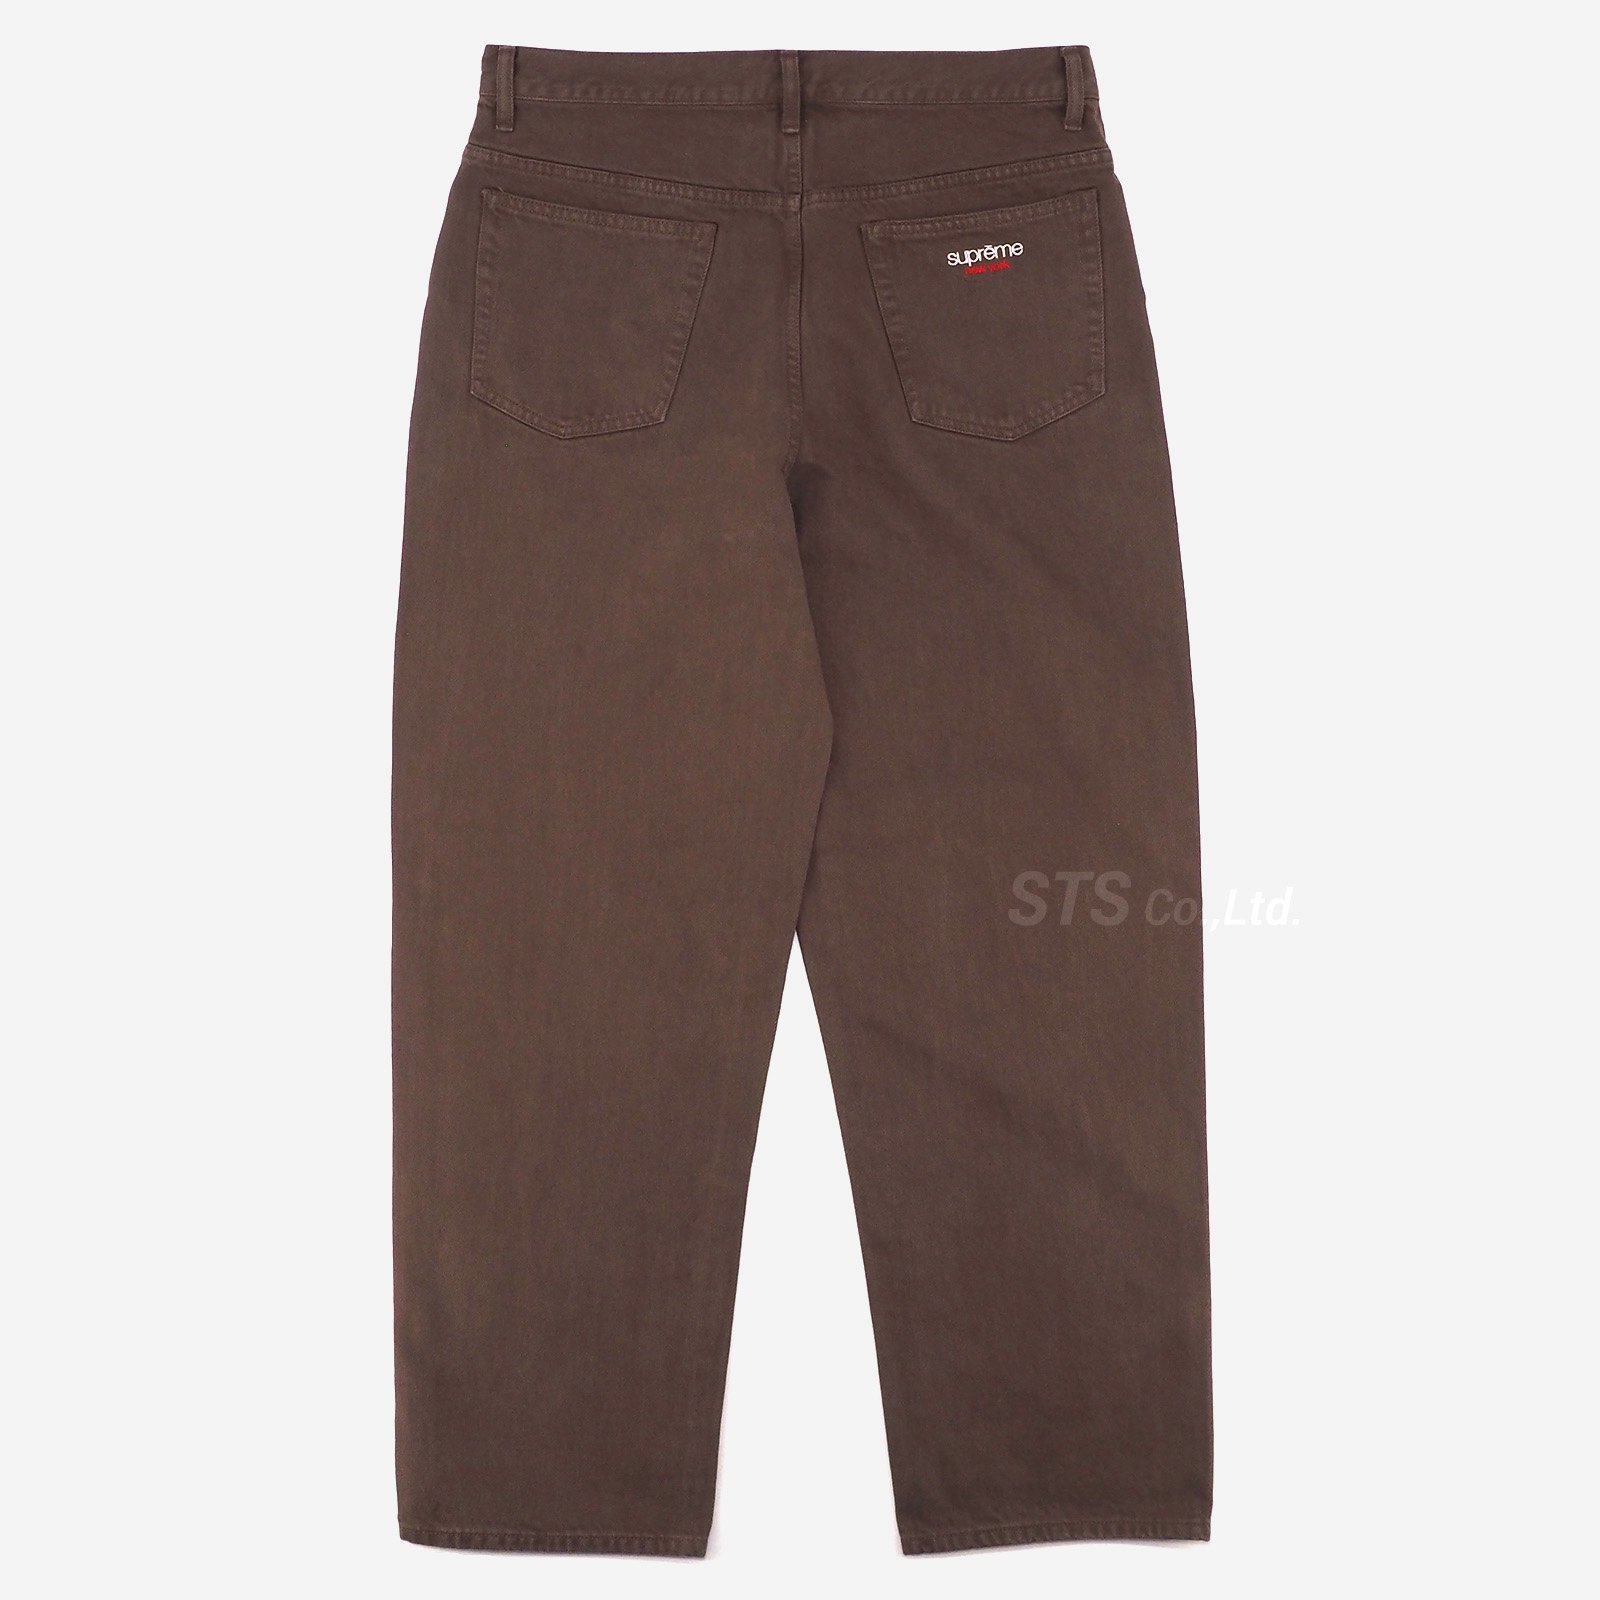 Supreme 22SS baggy pants brown 30